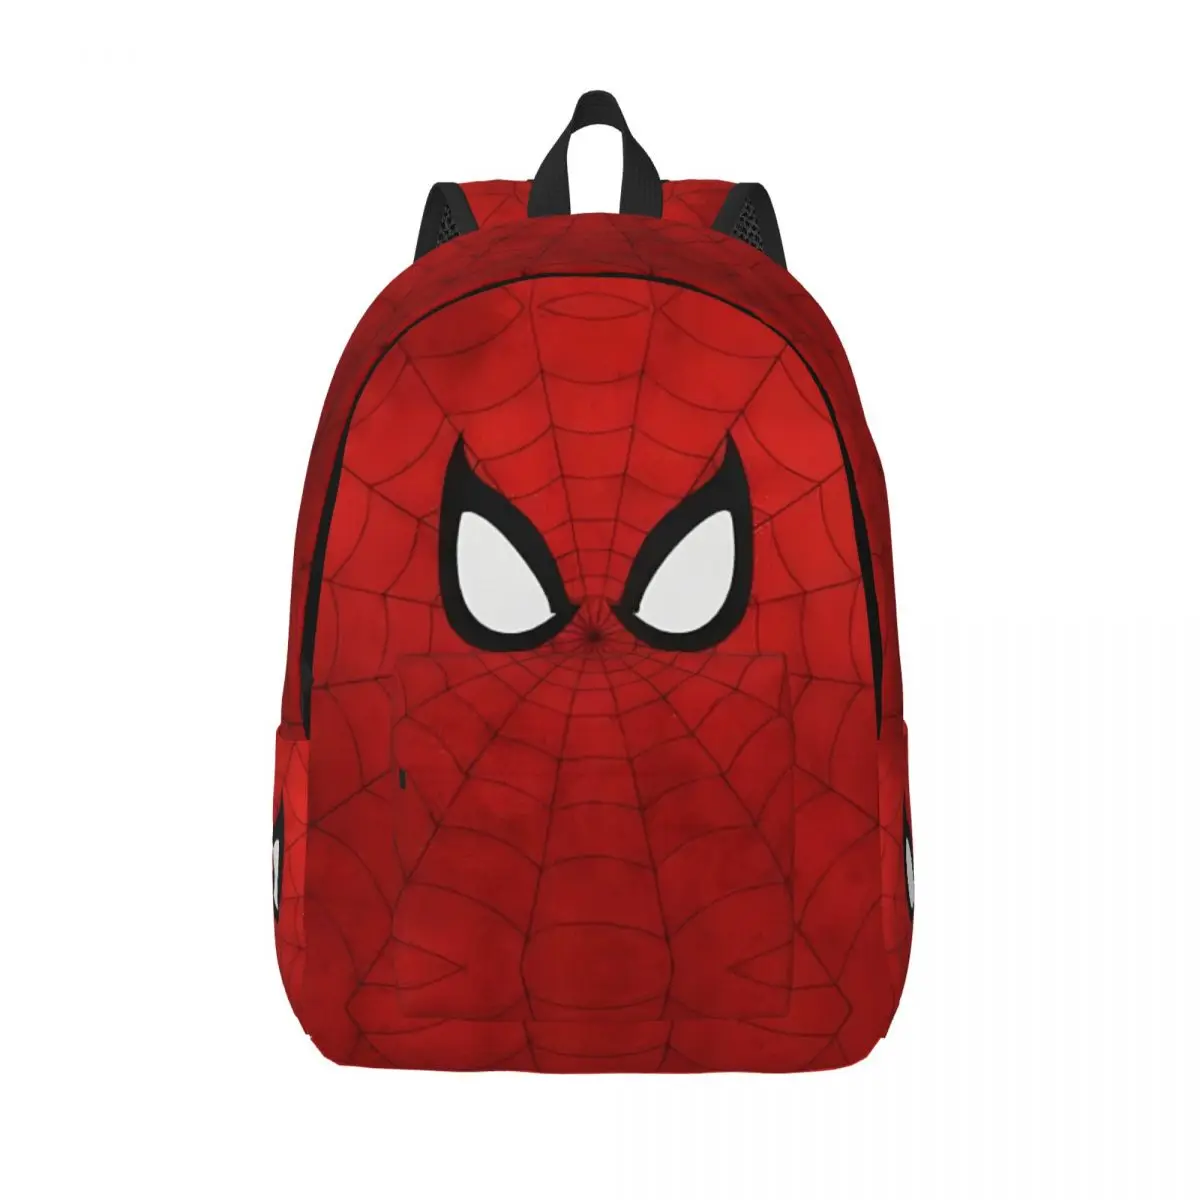 

Spider Spiderman Spiderverse Superhero Backpack for Men Women Fashion Student Work Daypack Laptop Shoulder Bag Lightweight